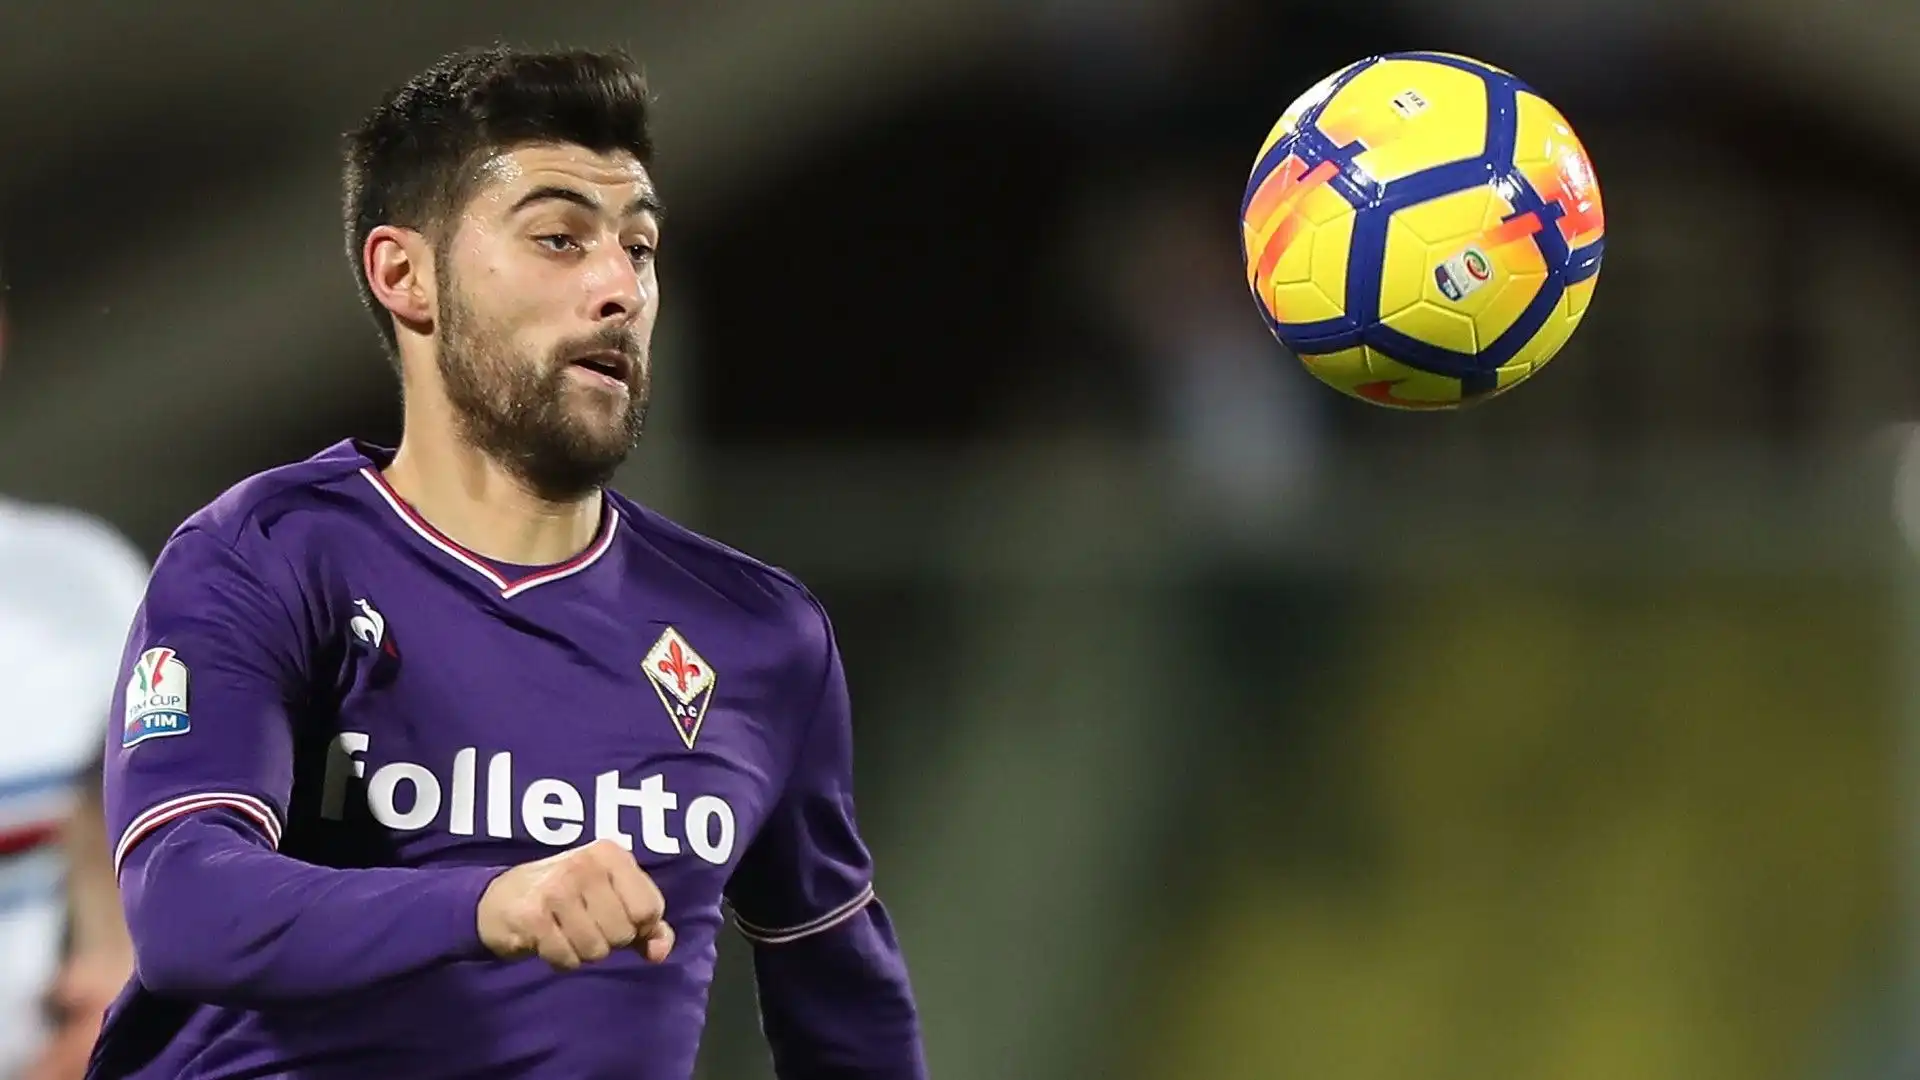 Ad agosto 2017 la Fiorentina ha investito 12 milioni di euro per ingaggiarlo